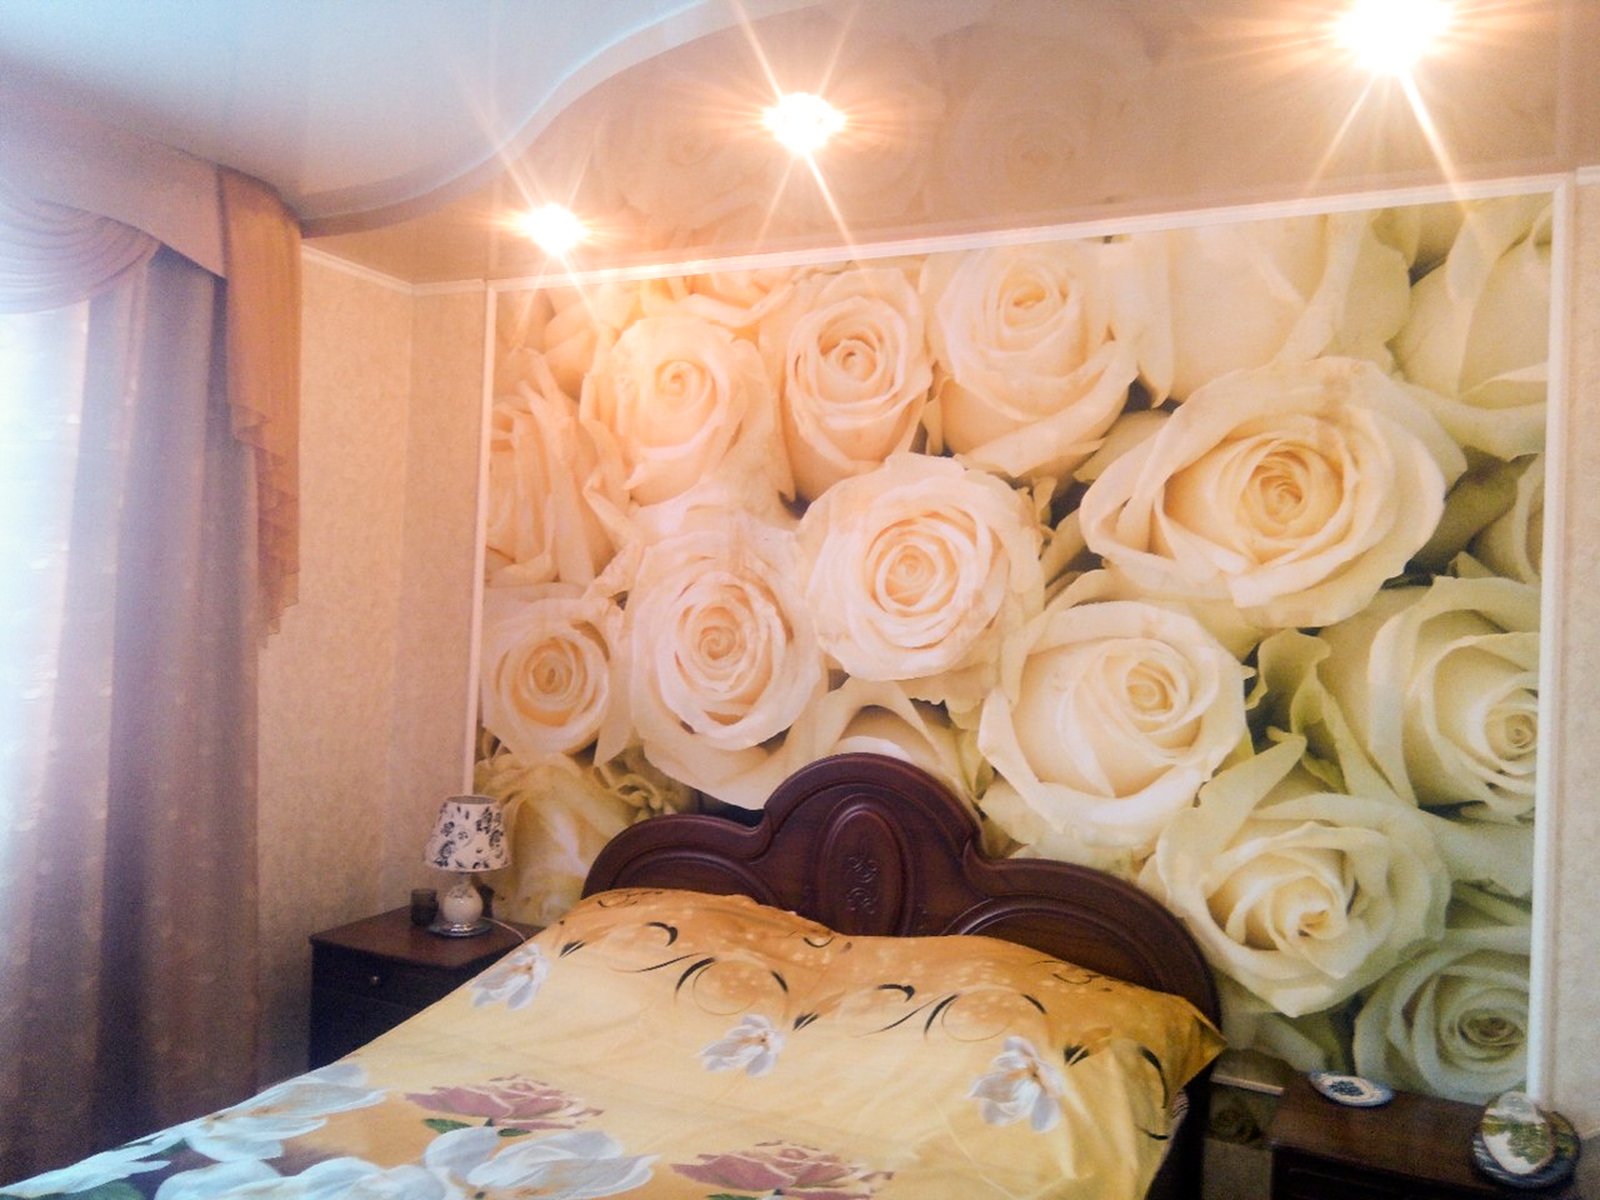 Обои с розами в интерьере спальни